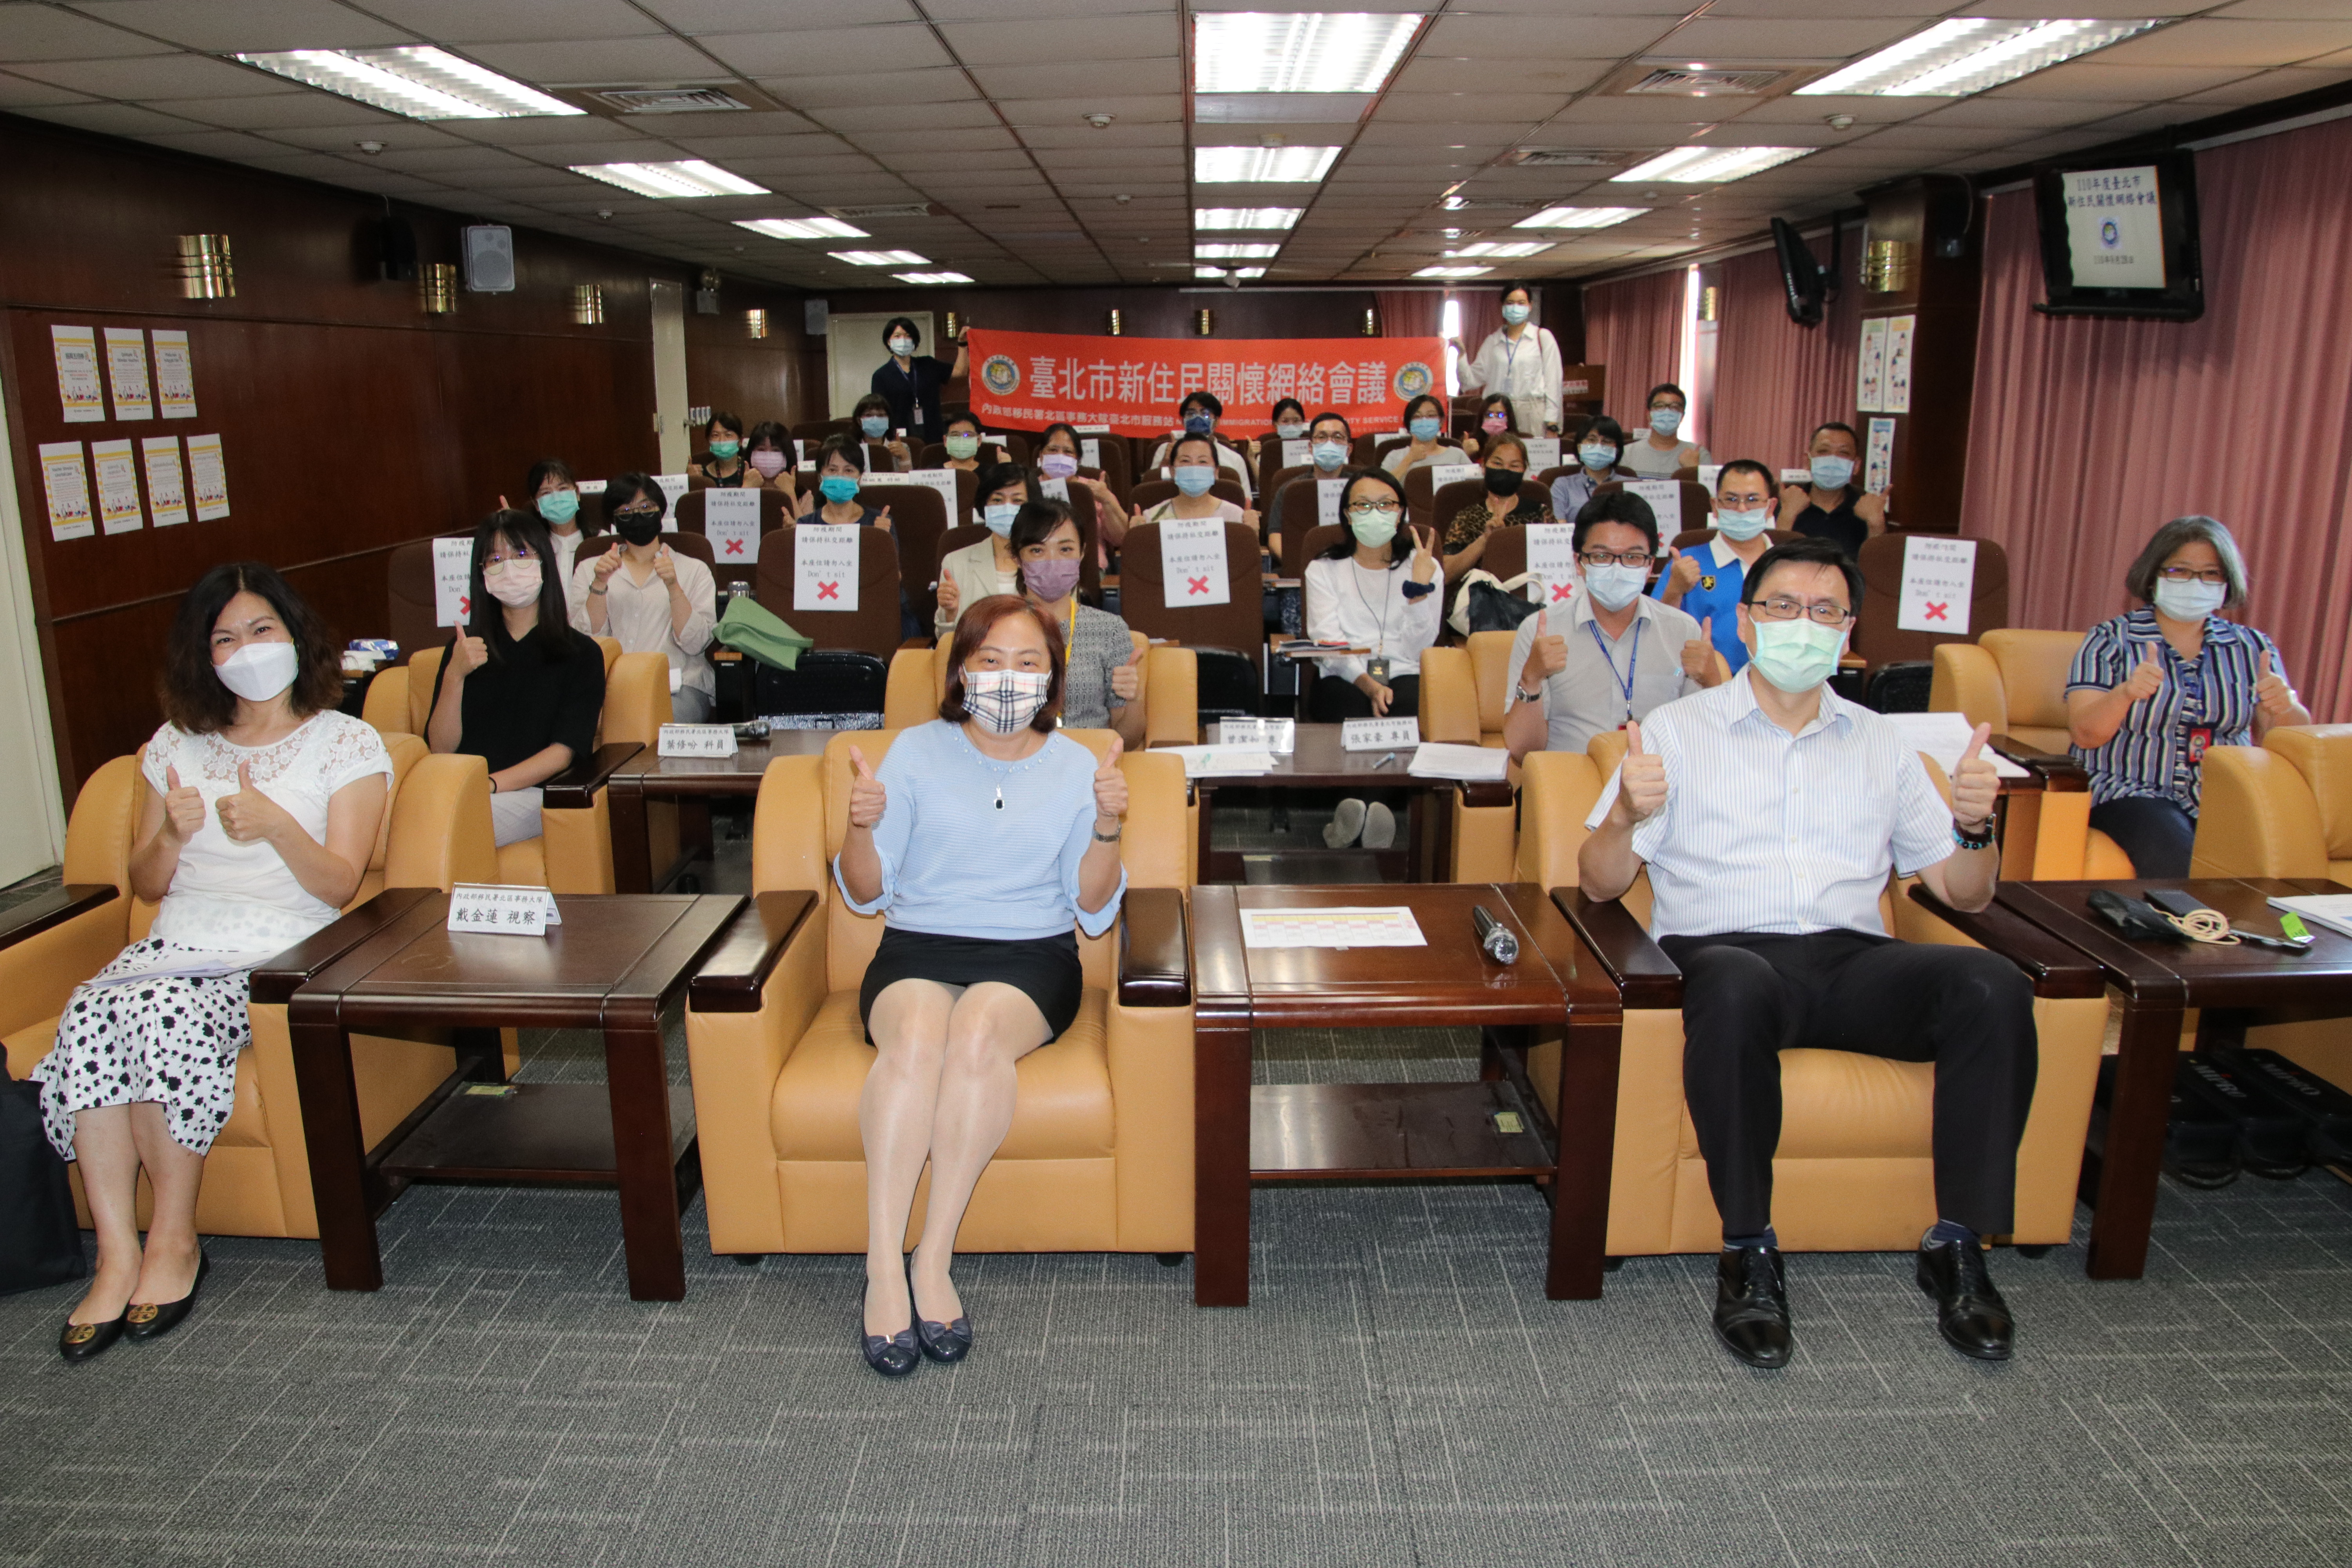 Ngày 28/9, Trạm Phục vụ thuộc Đội Nghiệp vụ khu vực phía Bắc của Sở Di dân tại thành phố Đài Bắc đã tổ chức "Hội nghị Mạng lưới chăm sóc di dân mới năm 2021". (Nguồn ảnh: Trạm Phục vụ của Sở Di dân tại Đài Bắc)